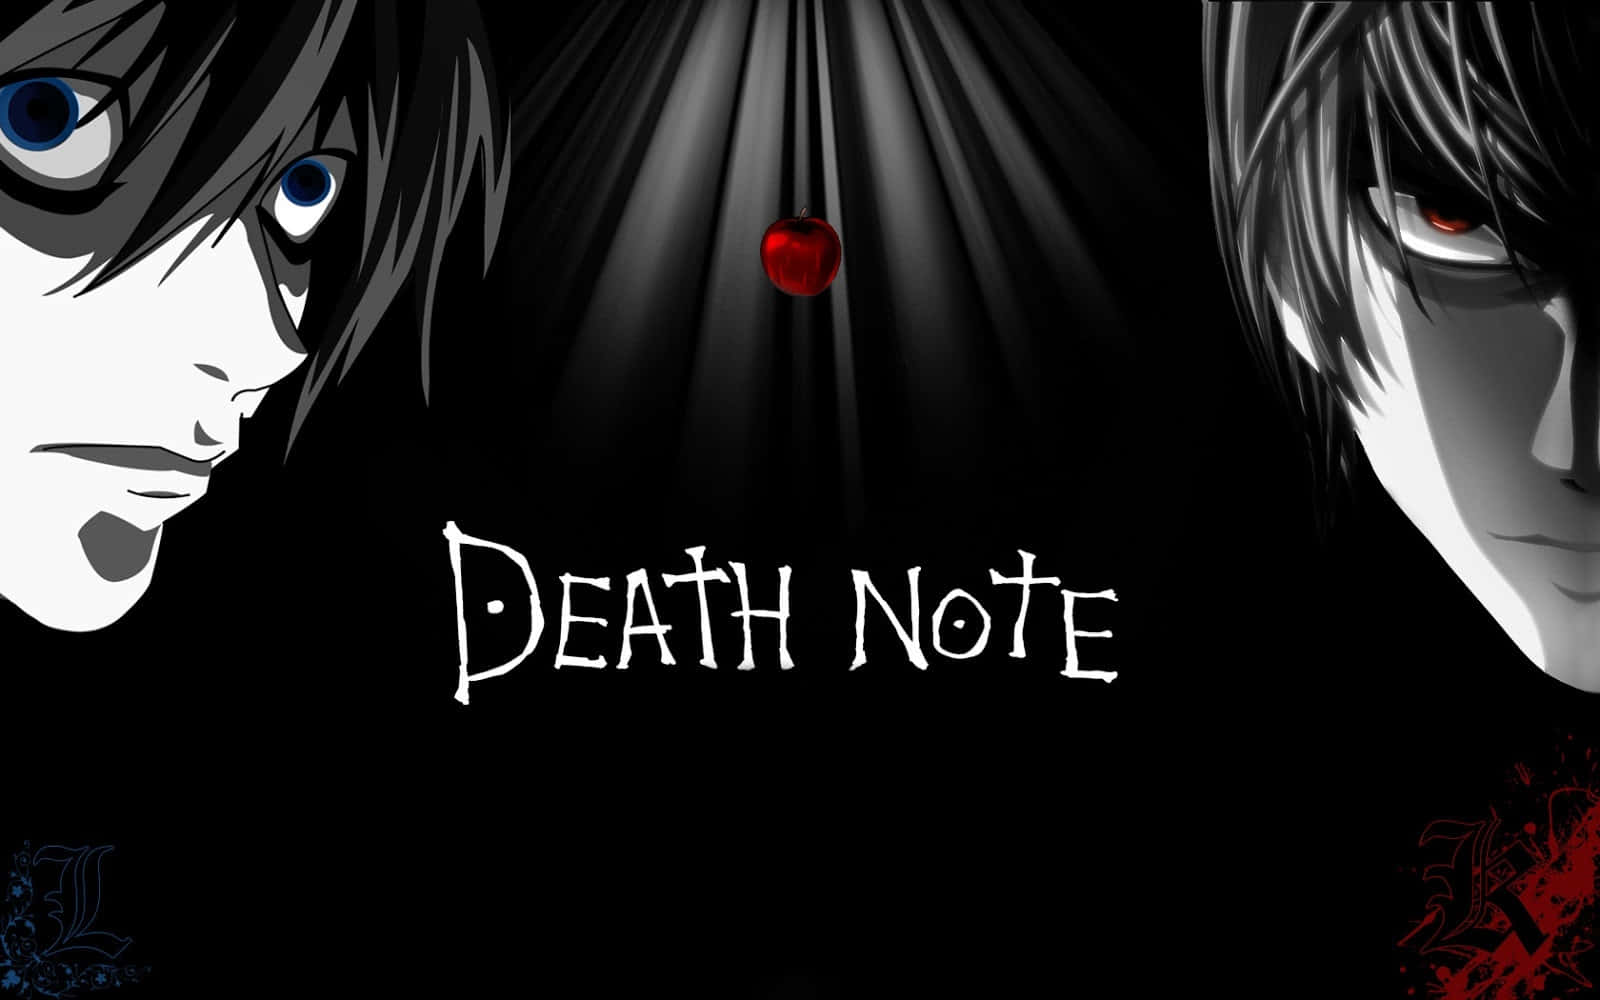 Erlebedas Gruselige Geheimnis Von Death Note